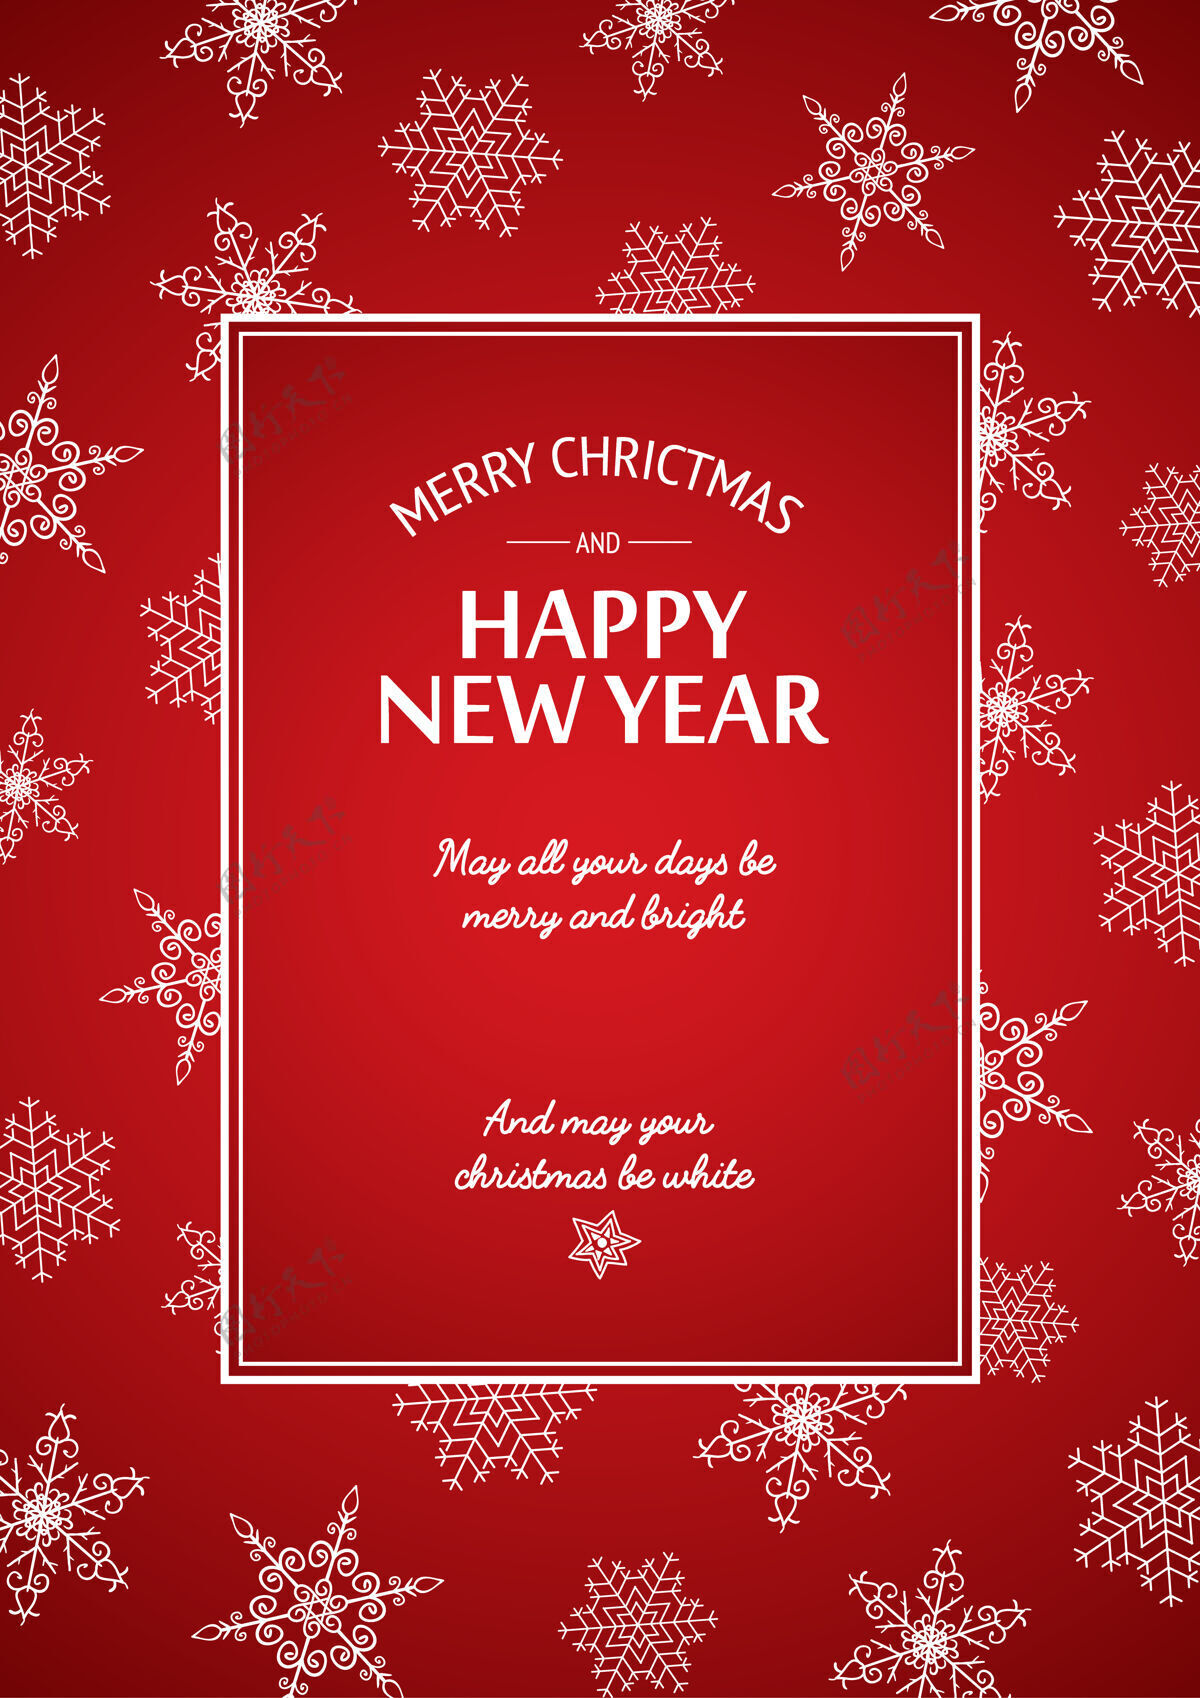 灯圣诞和新年贺卡 矩形框上有书法题字 红色框上有白色雪花形状书法新年